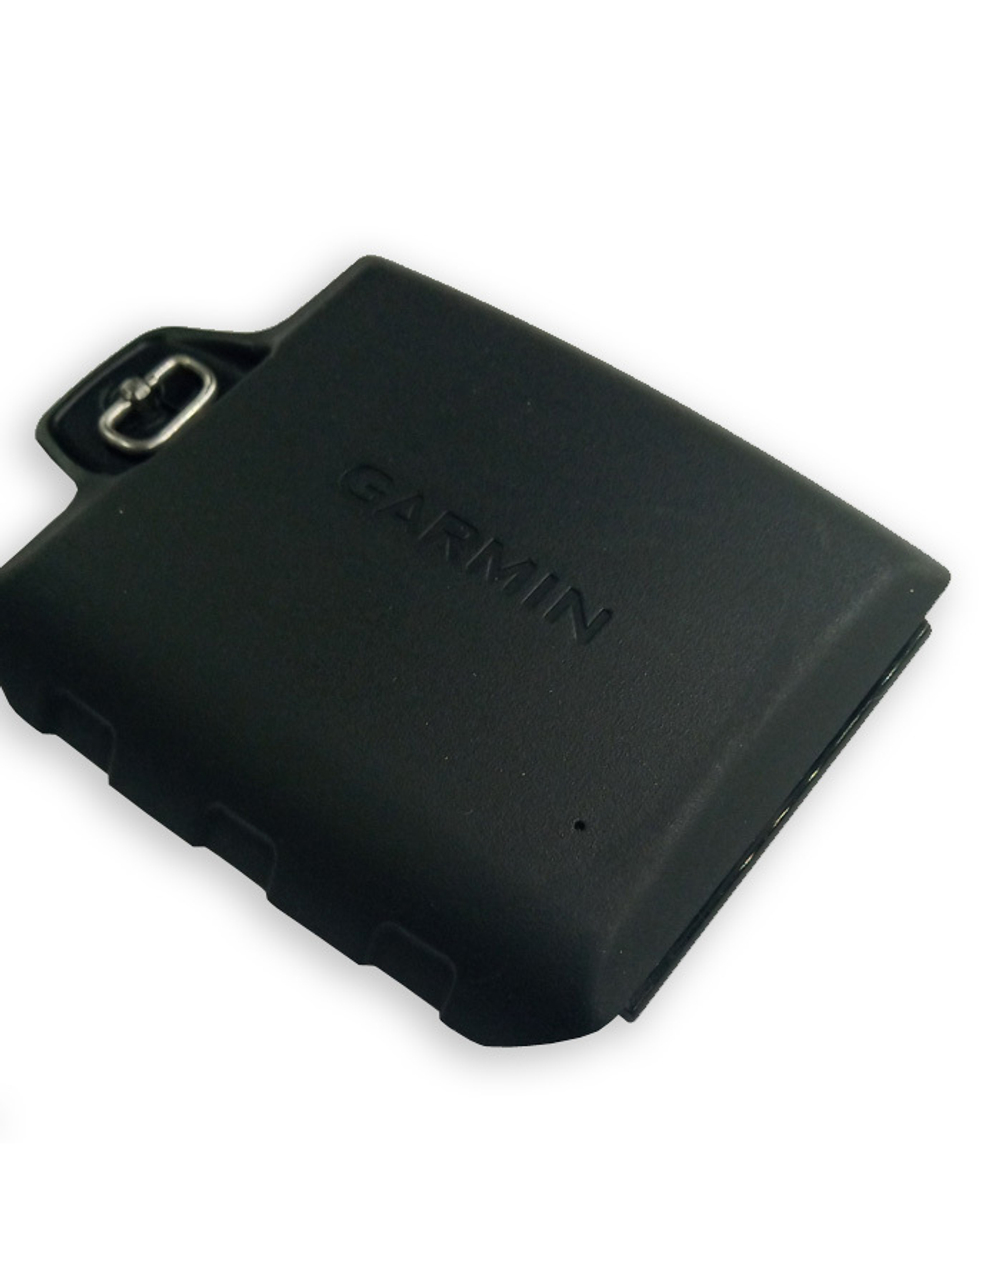 Garmin Montana 6xx крышка батарейного отсека, черная (010-00924-BC)